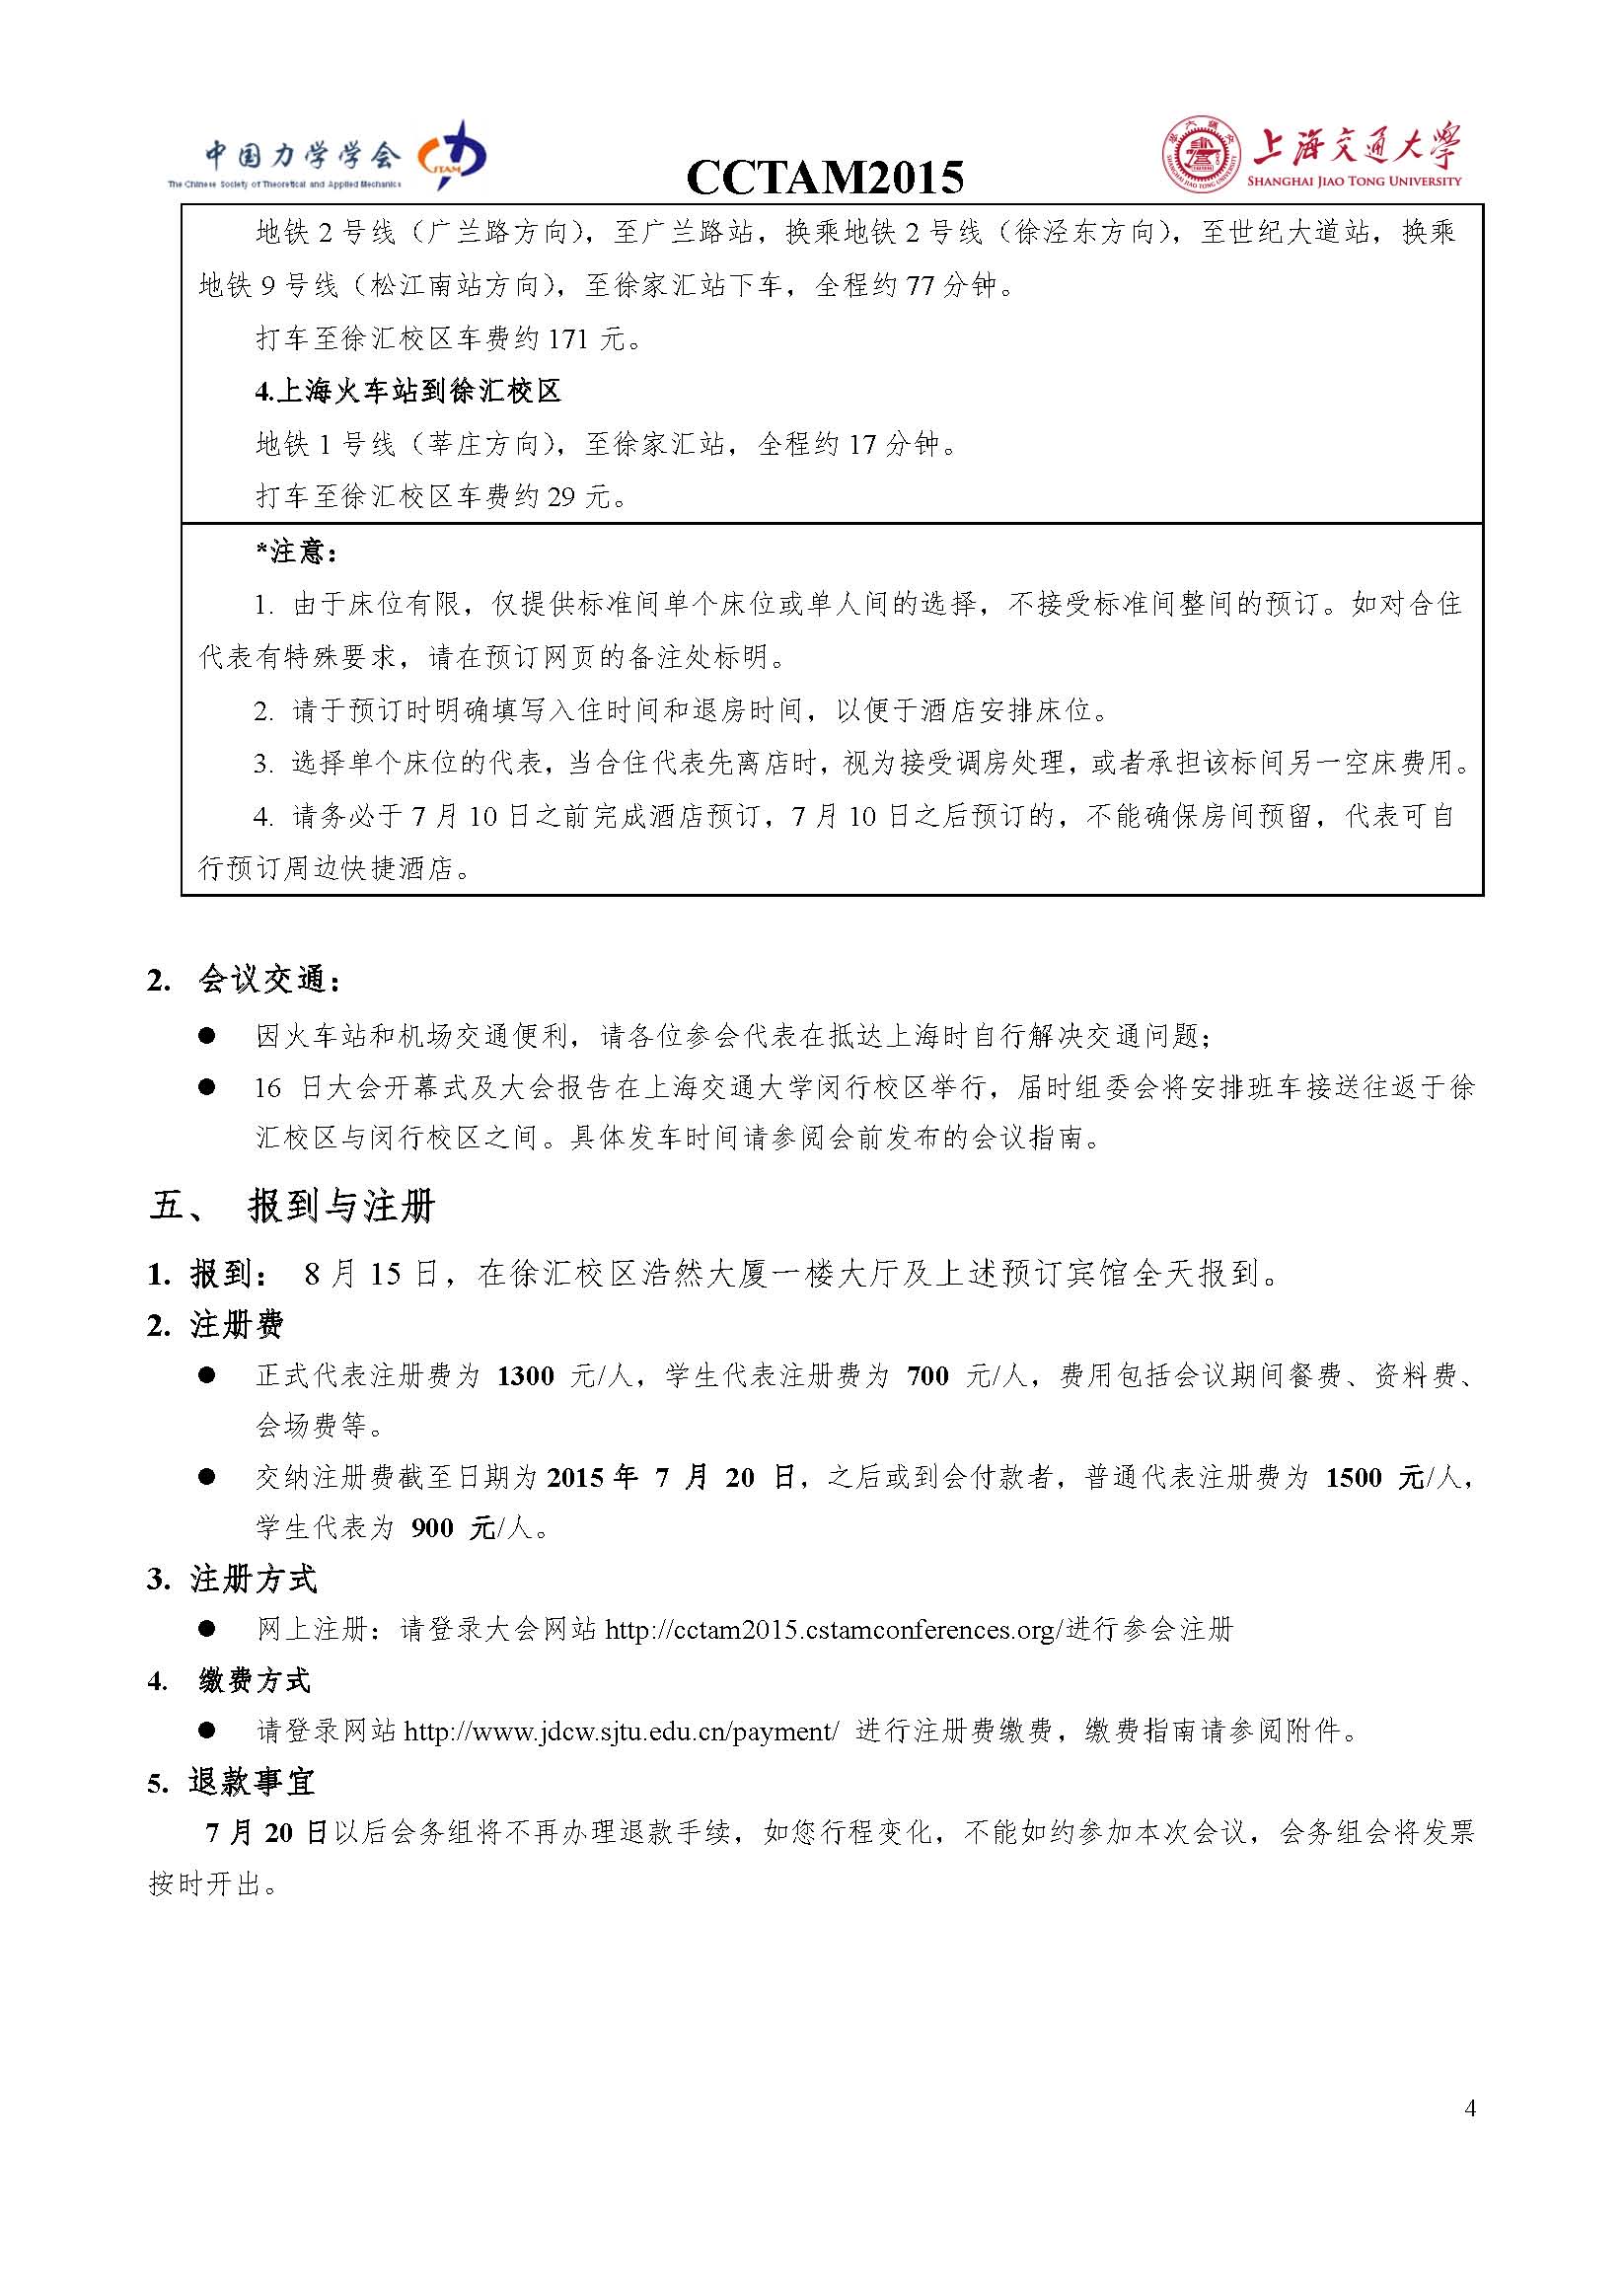 中国力学大会-2015参会通知0803_页面_4.jpg